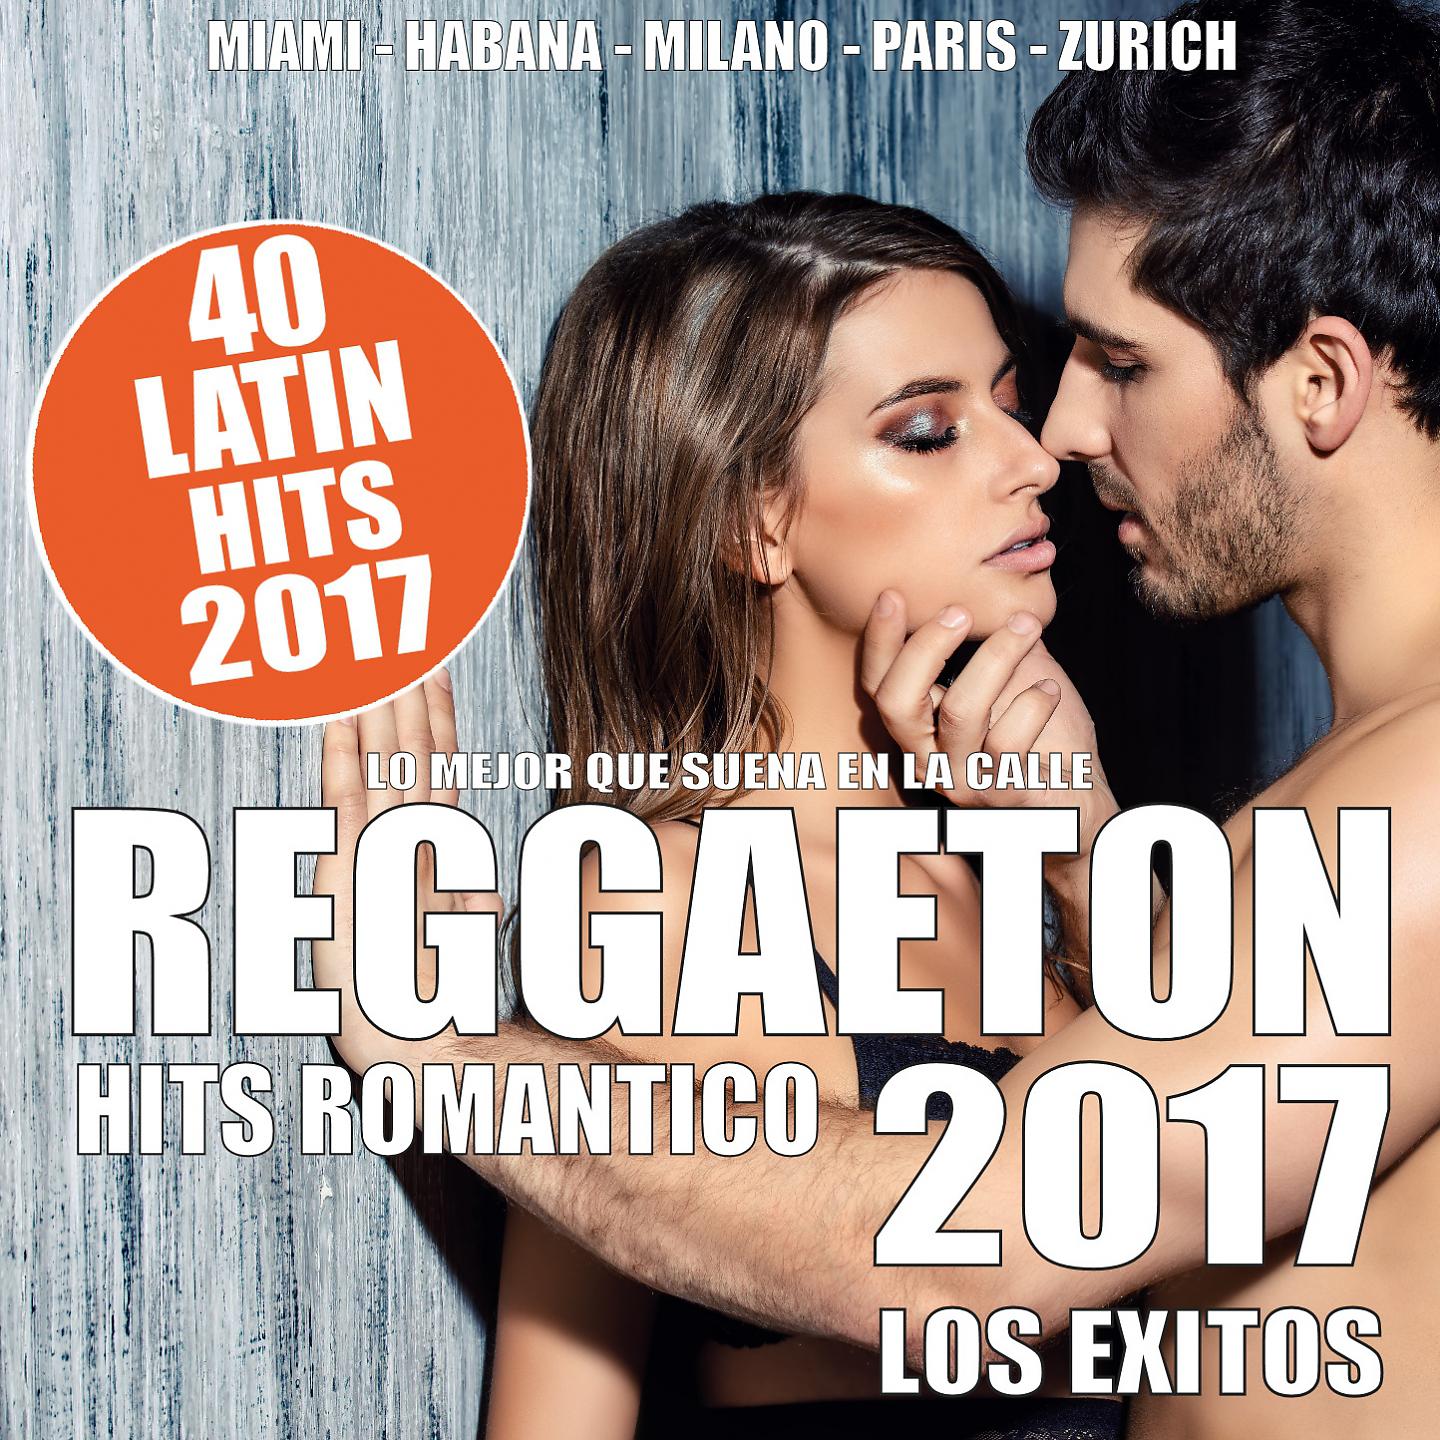 Постер альбома REGGAETON 2017 - 40 Latin Hits Romantico